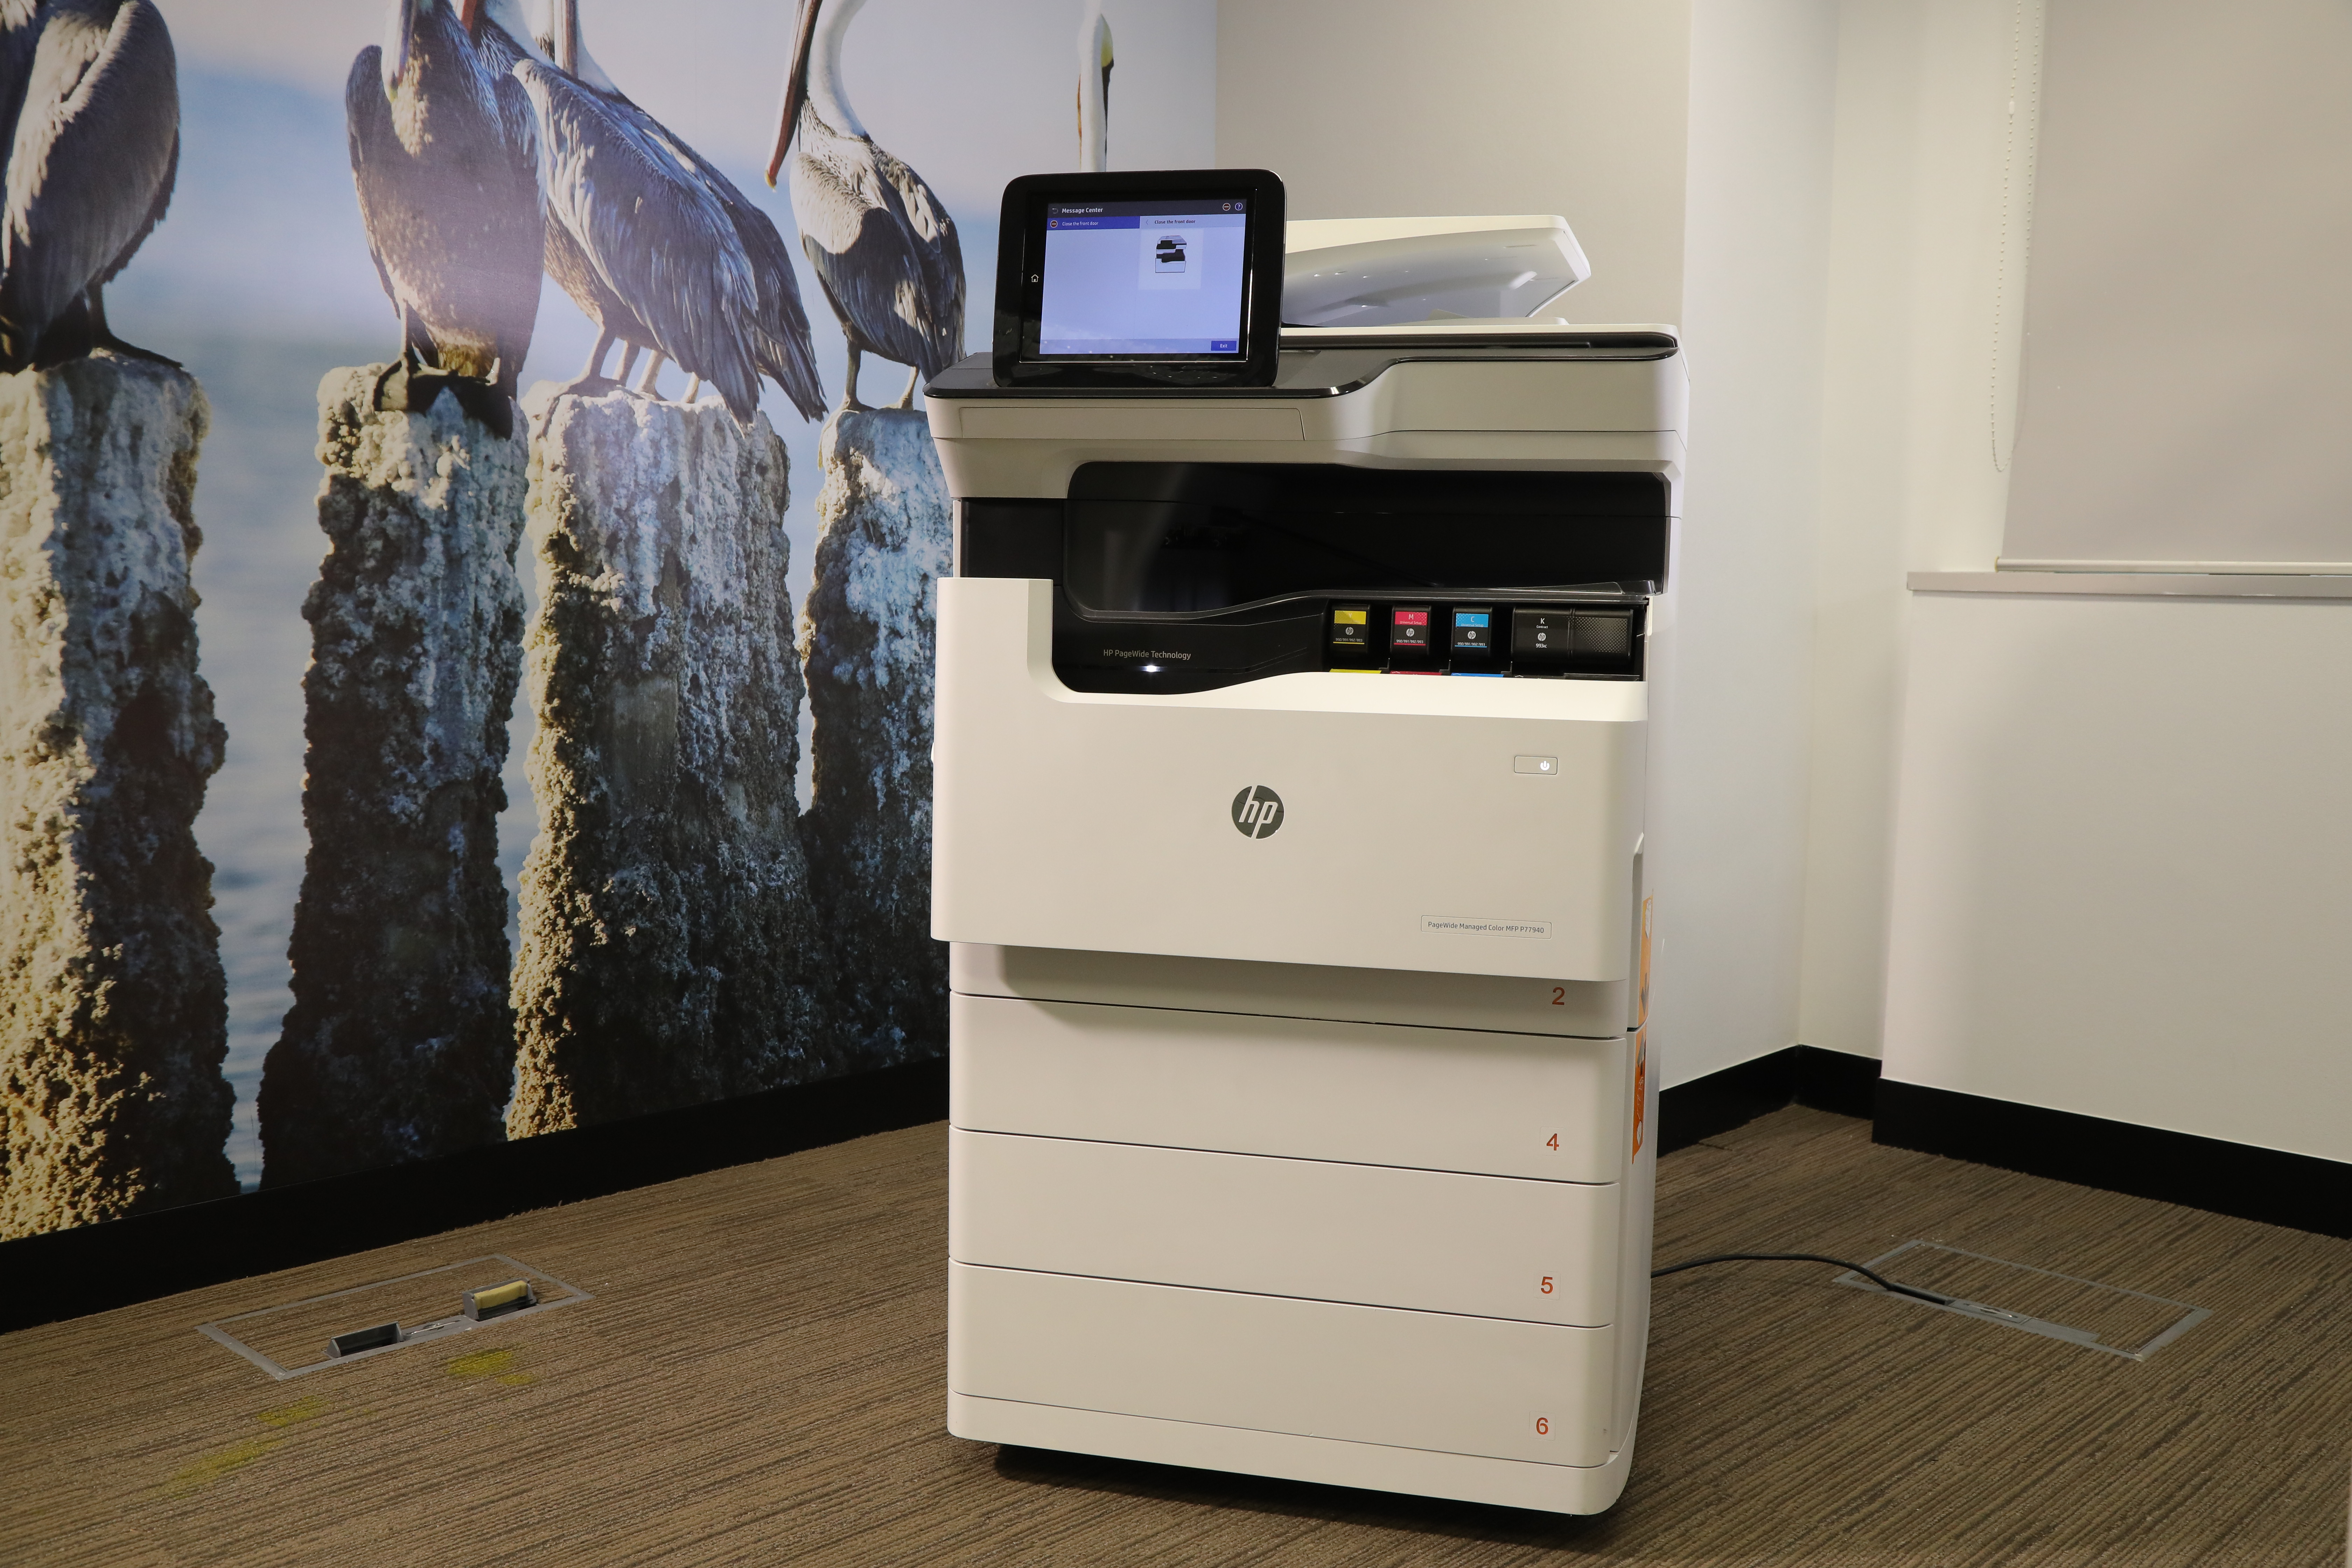 獲得國際測試實驗室 BLI 認證的 PageWide 系列，是最可靠的商用打印機及多功能打印機。